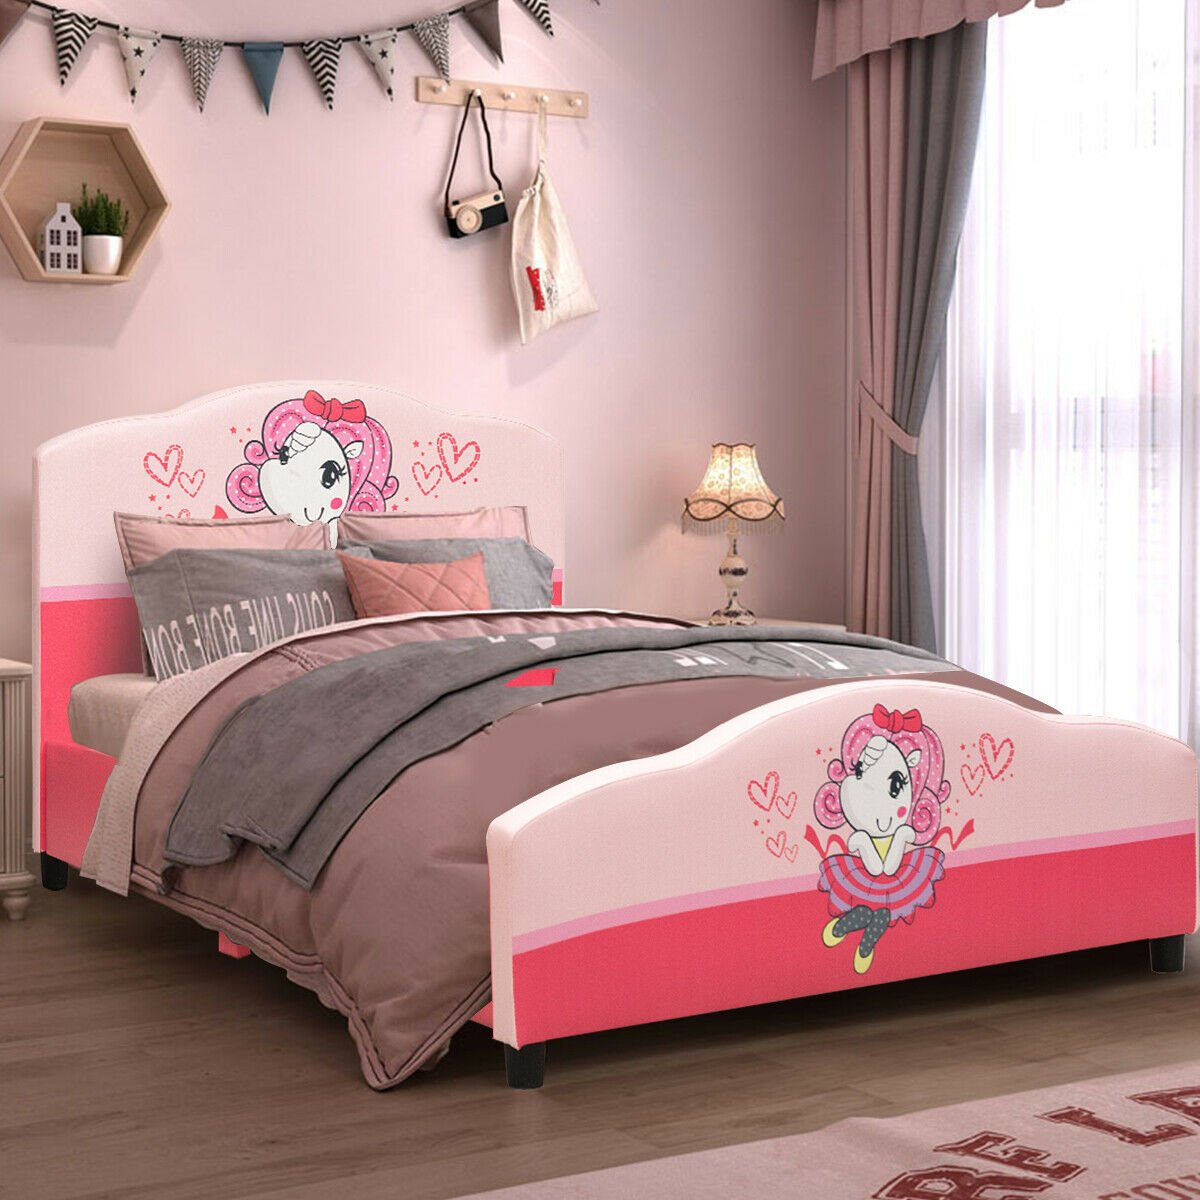 Kids Children Upholstered Platform Toddler Girl Pattern Bed, Pink